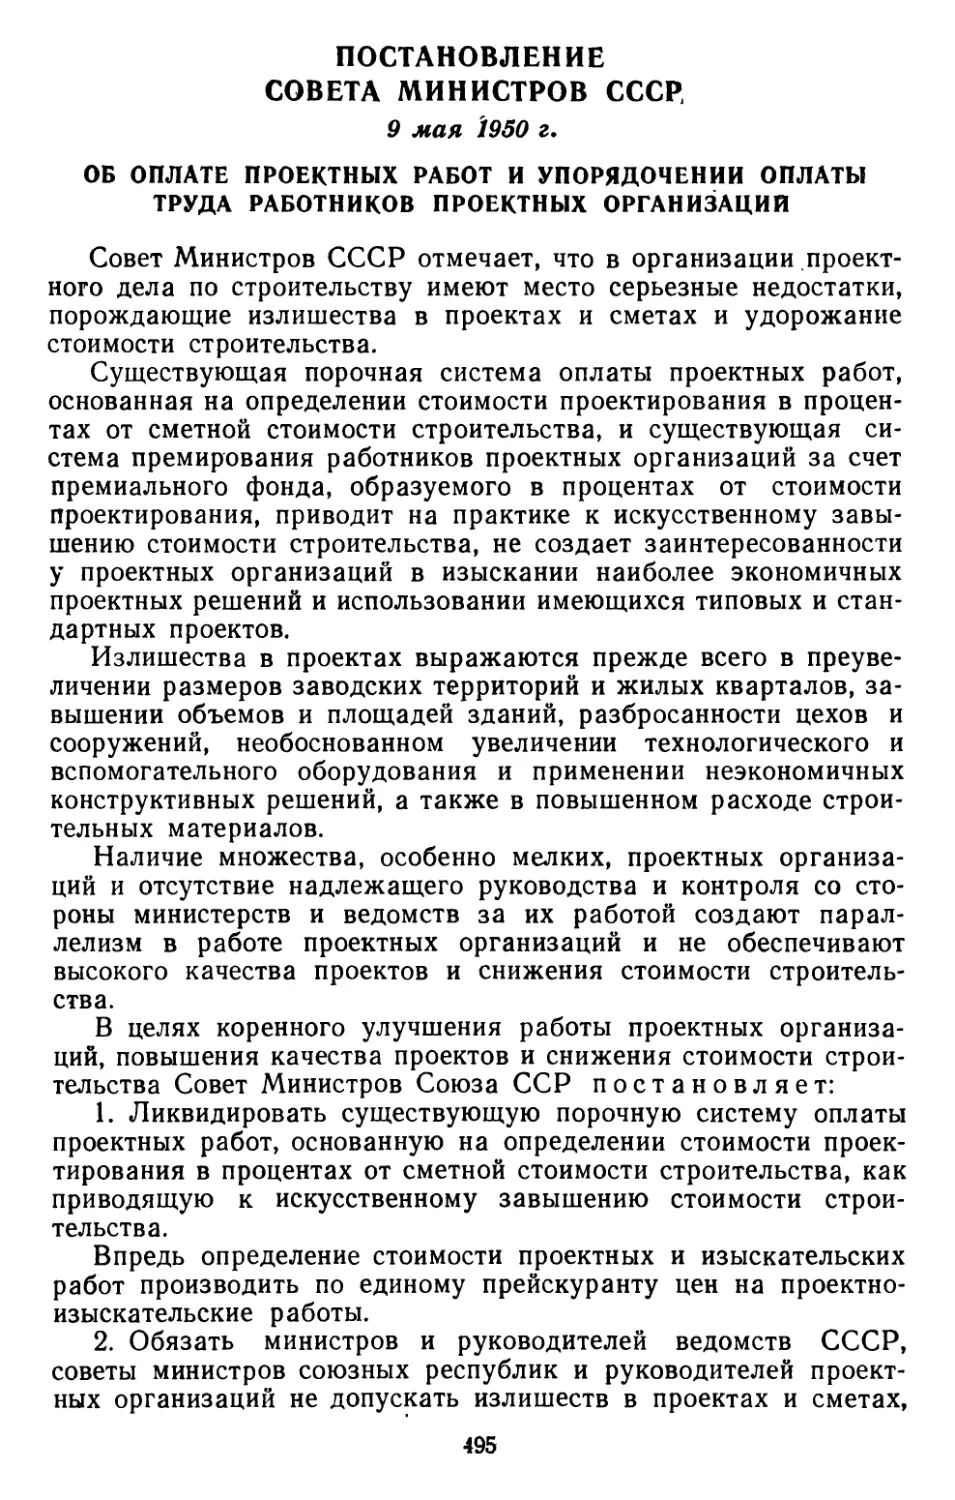 Постановление Совета Министров СССР, 9 мая 1950 г. Об оплате проектных работ и упорядочении оплаты труда работников проектных организаций